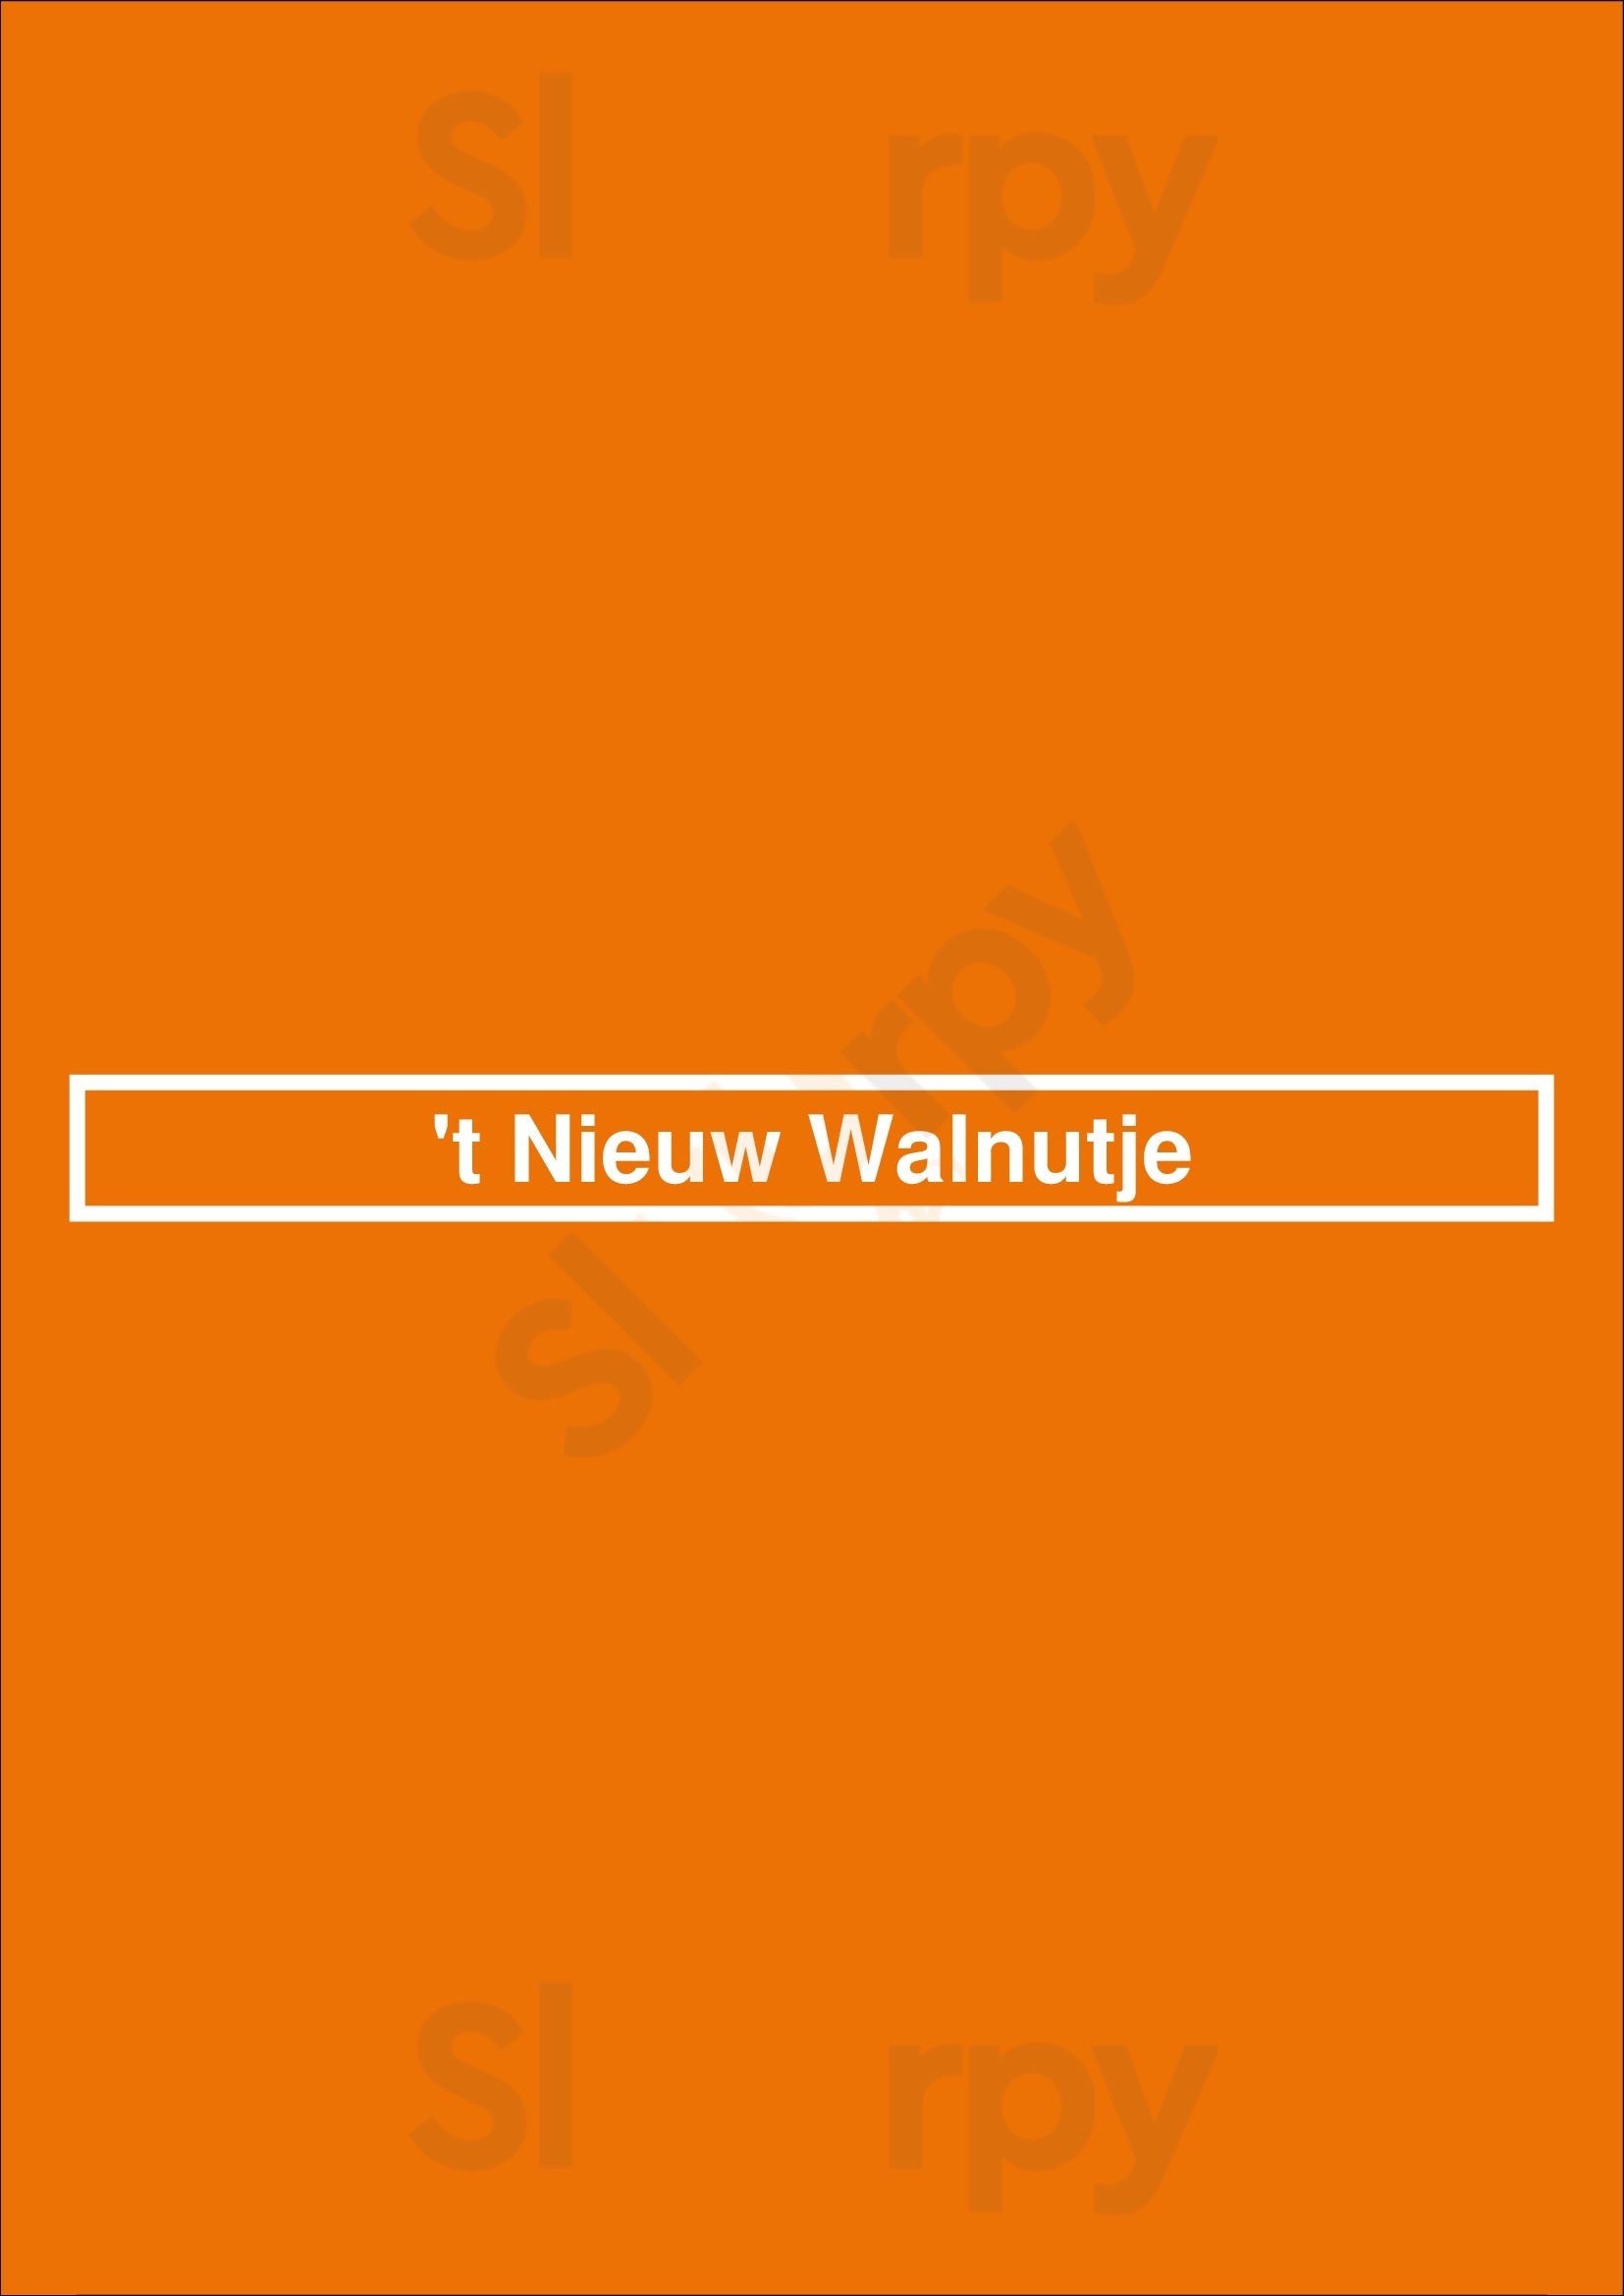 't Nieuw Walnutje Bruges Menu - 1